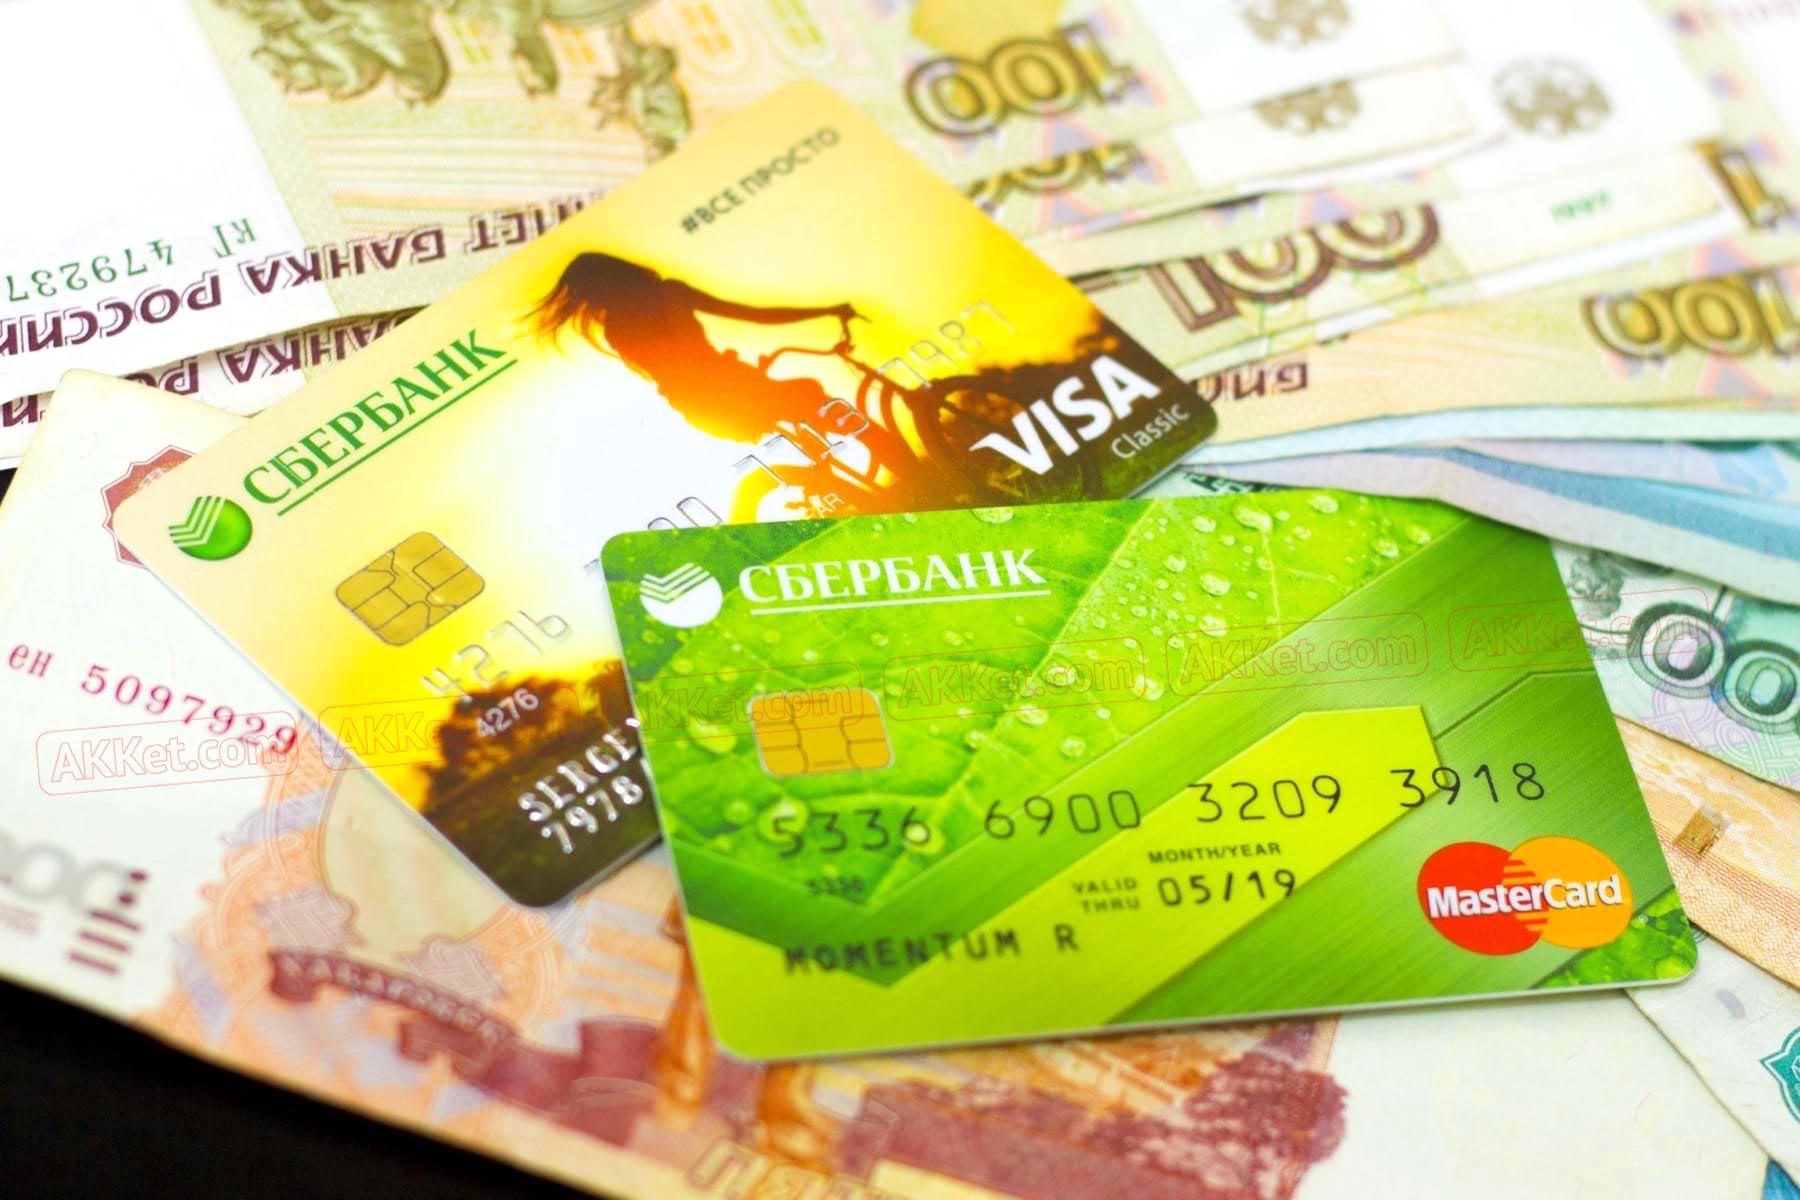 70 рублей спишутся со счета. «Сбербанк» подготовил неприятный сюрприз для всех, у кого есть банковская карта